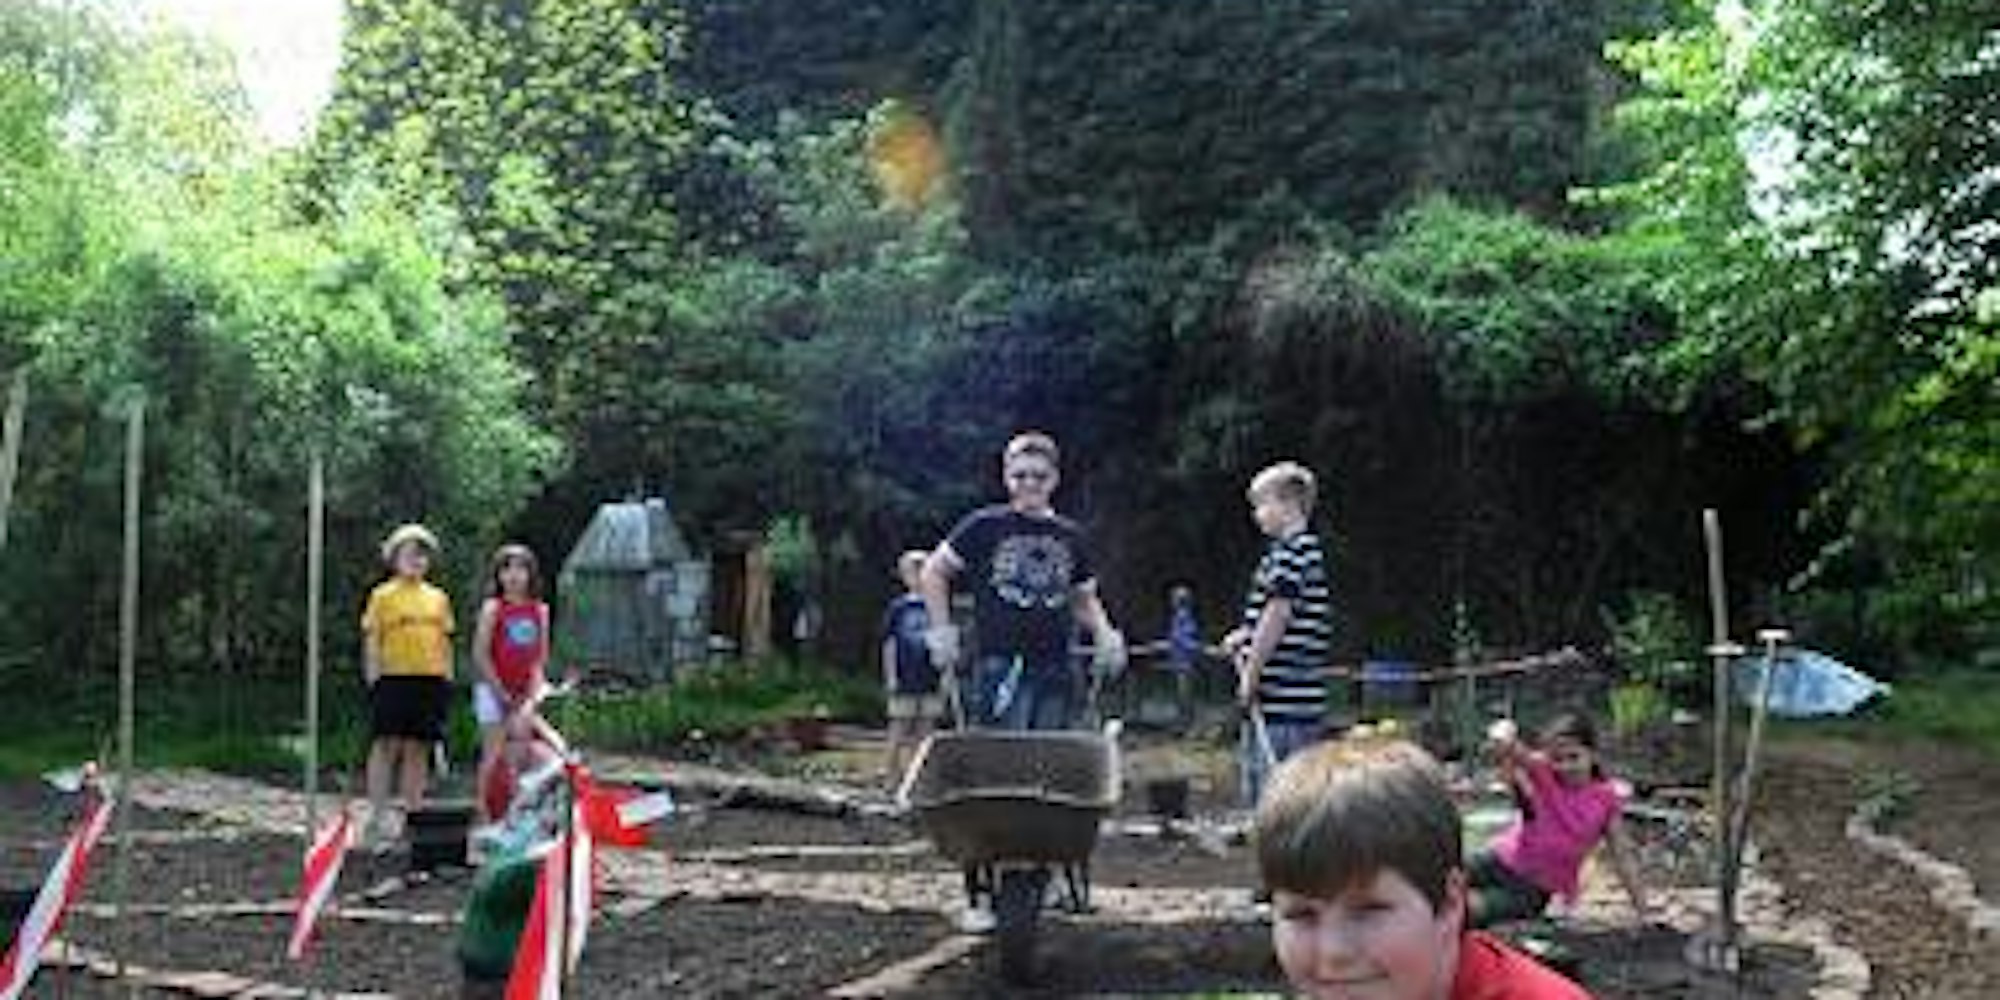 Pflanzen pflanzen, nicht spielen oder „chillen“: Im „Kompetenzgarten“ hinter dem Wiesdorfer Bunker können Kinder sich jetzt um ihr eigenes Grün kümmern. (Bild: Britta Berg)